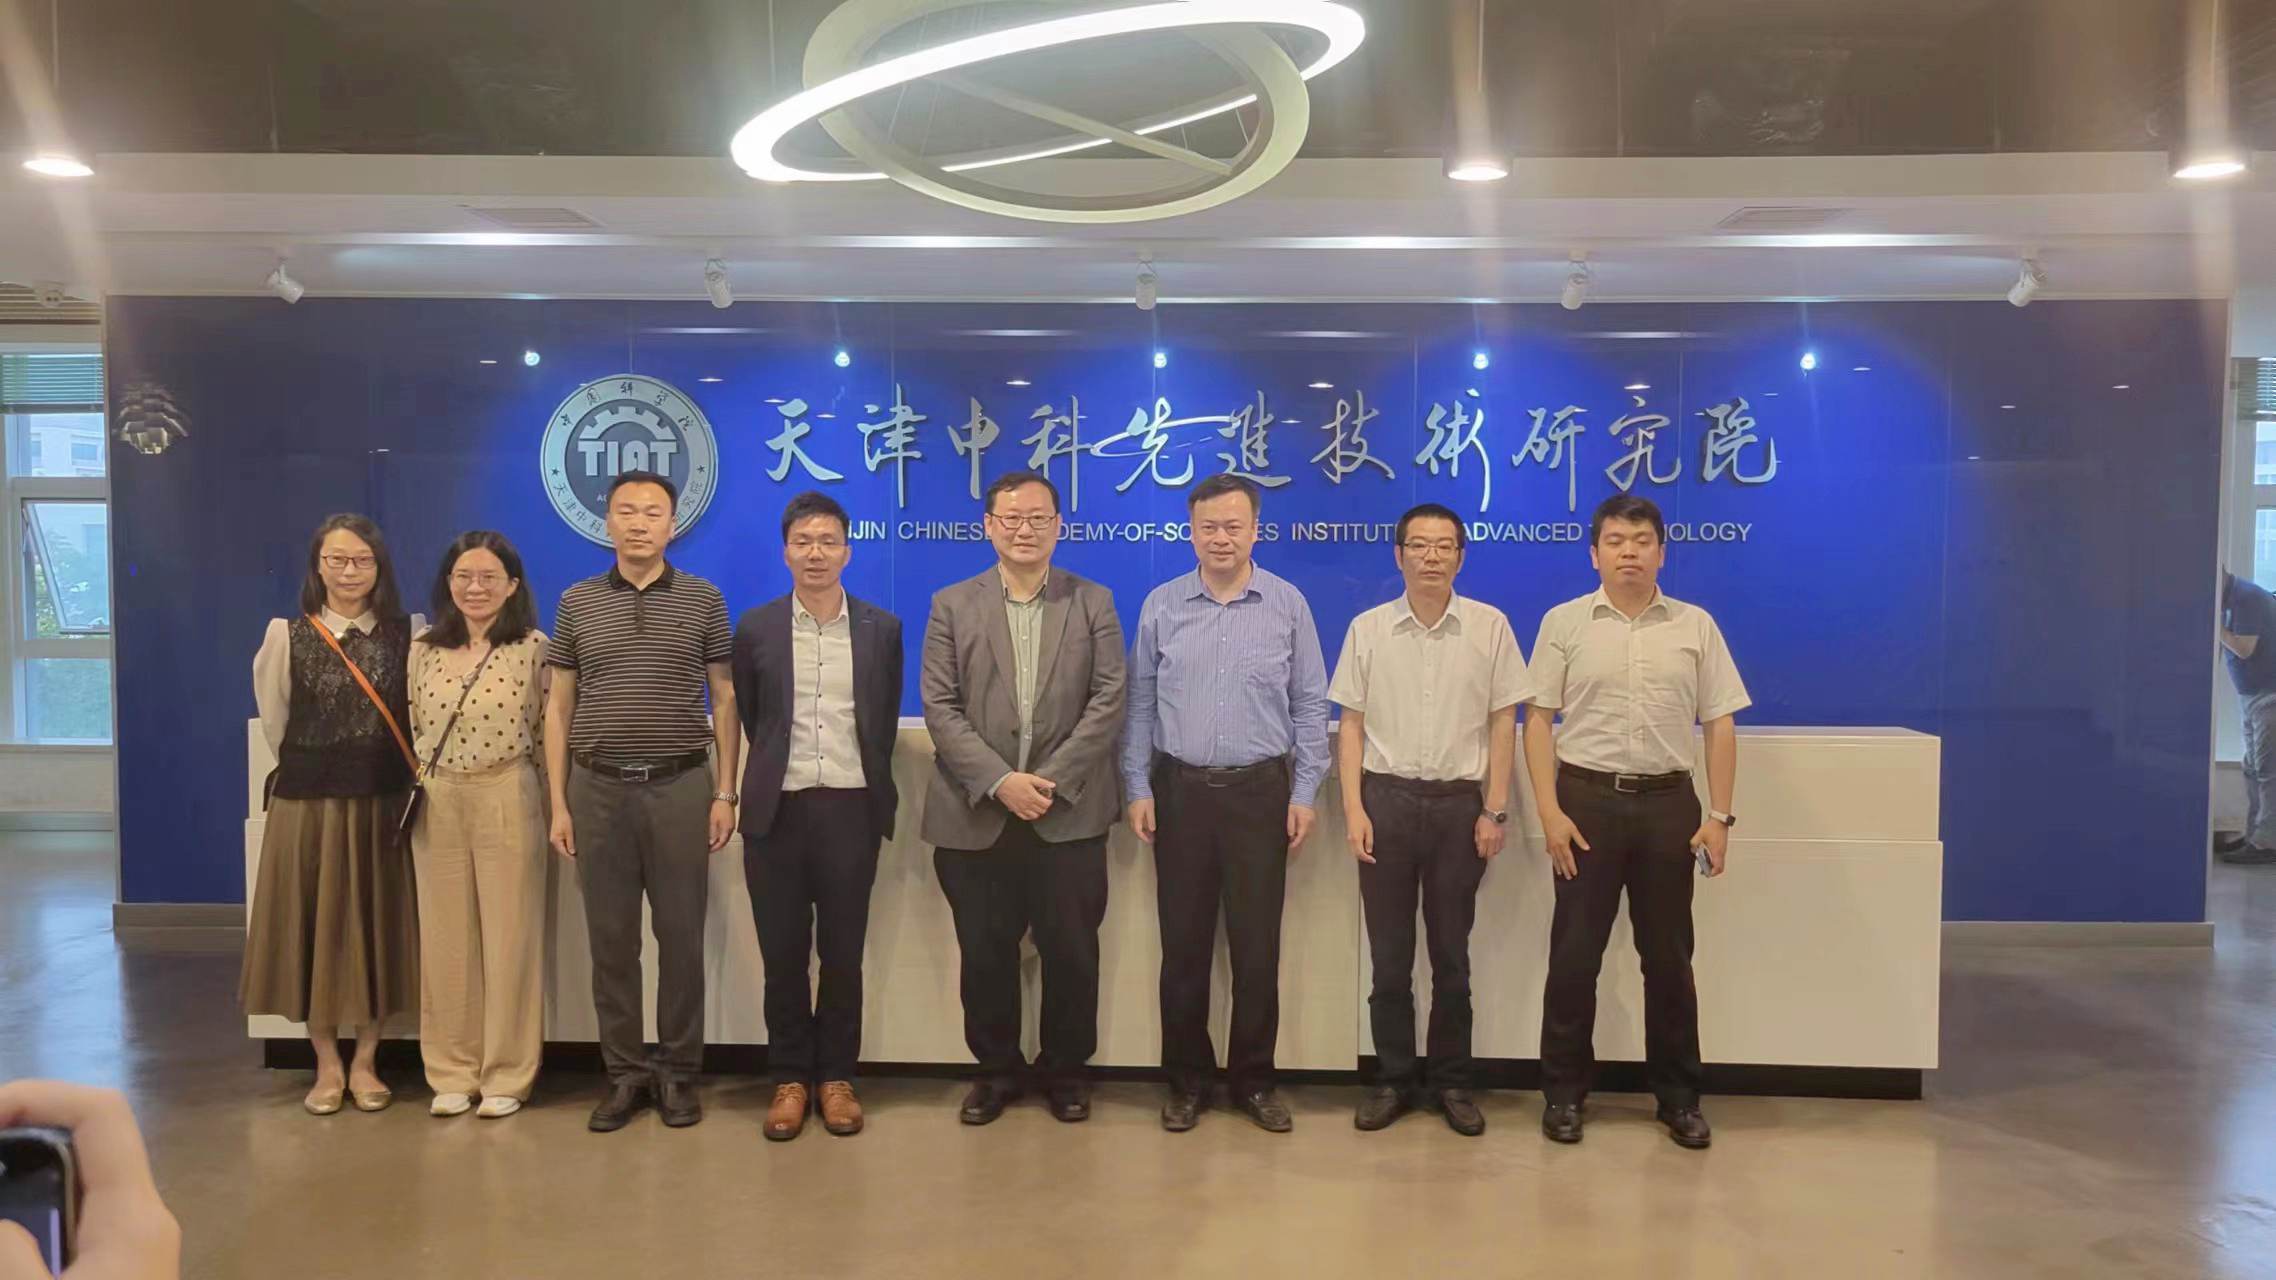 香港理工大学代表团参观访问天津中科先进院